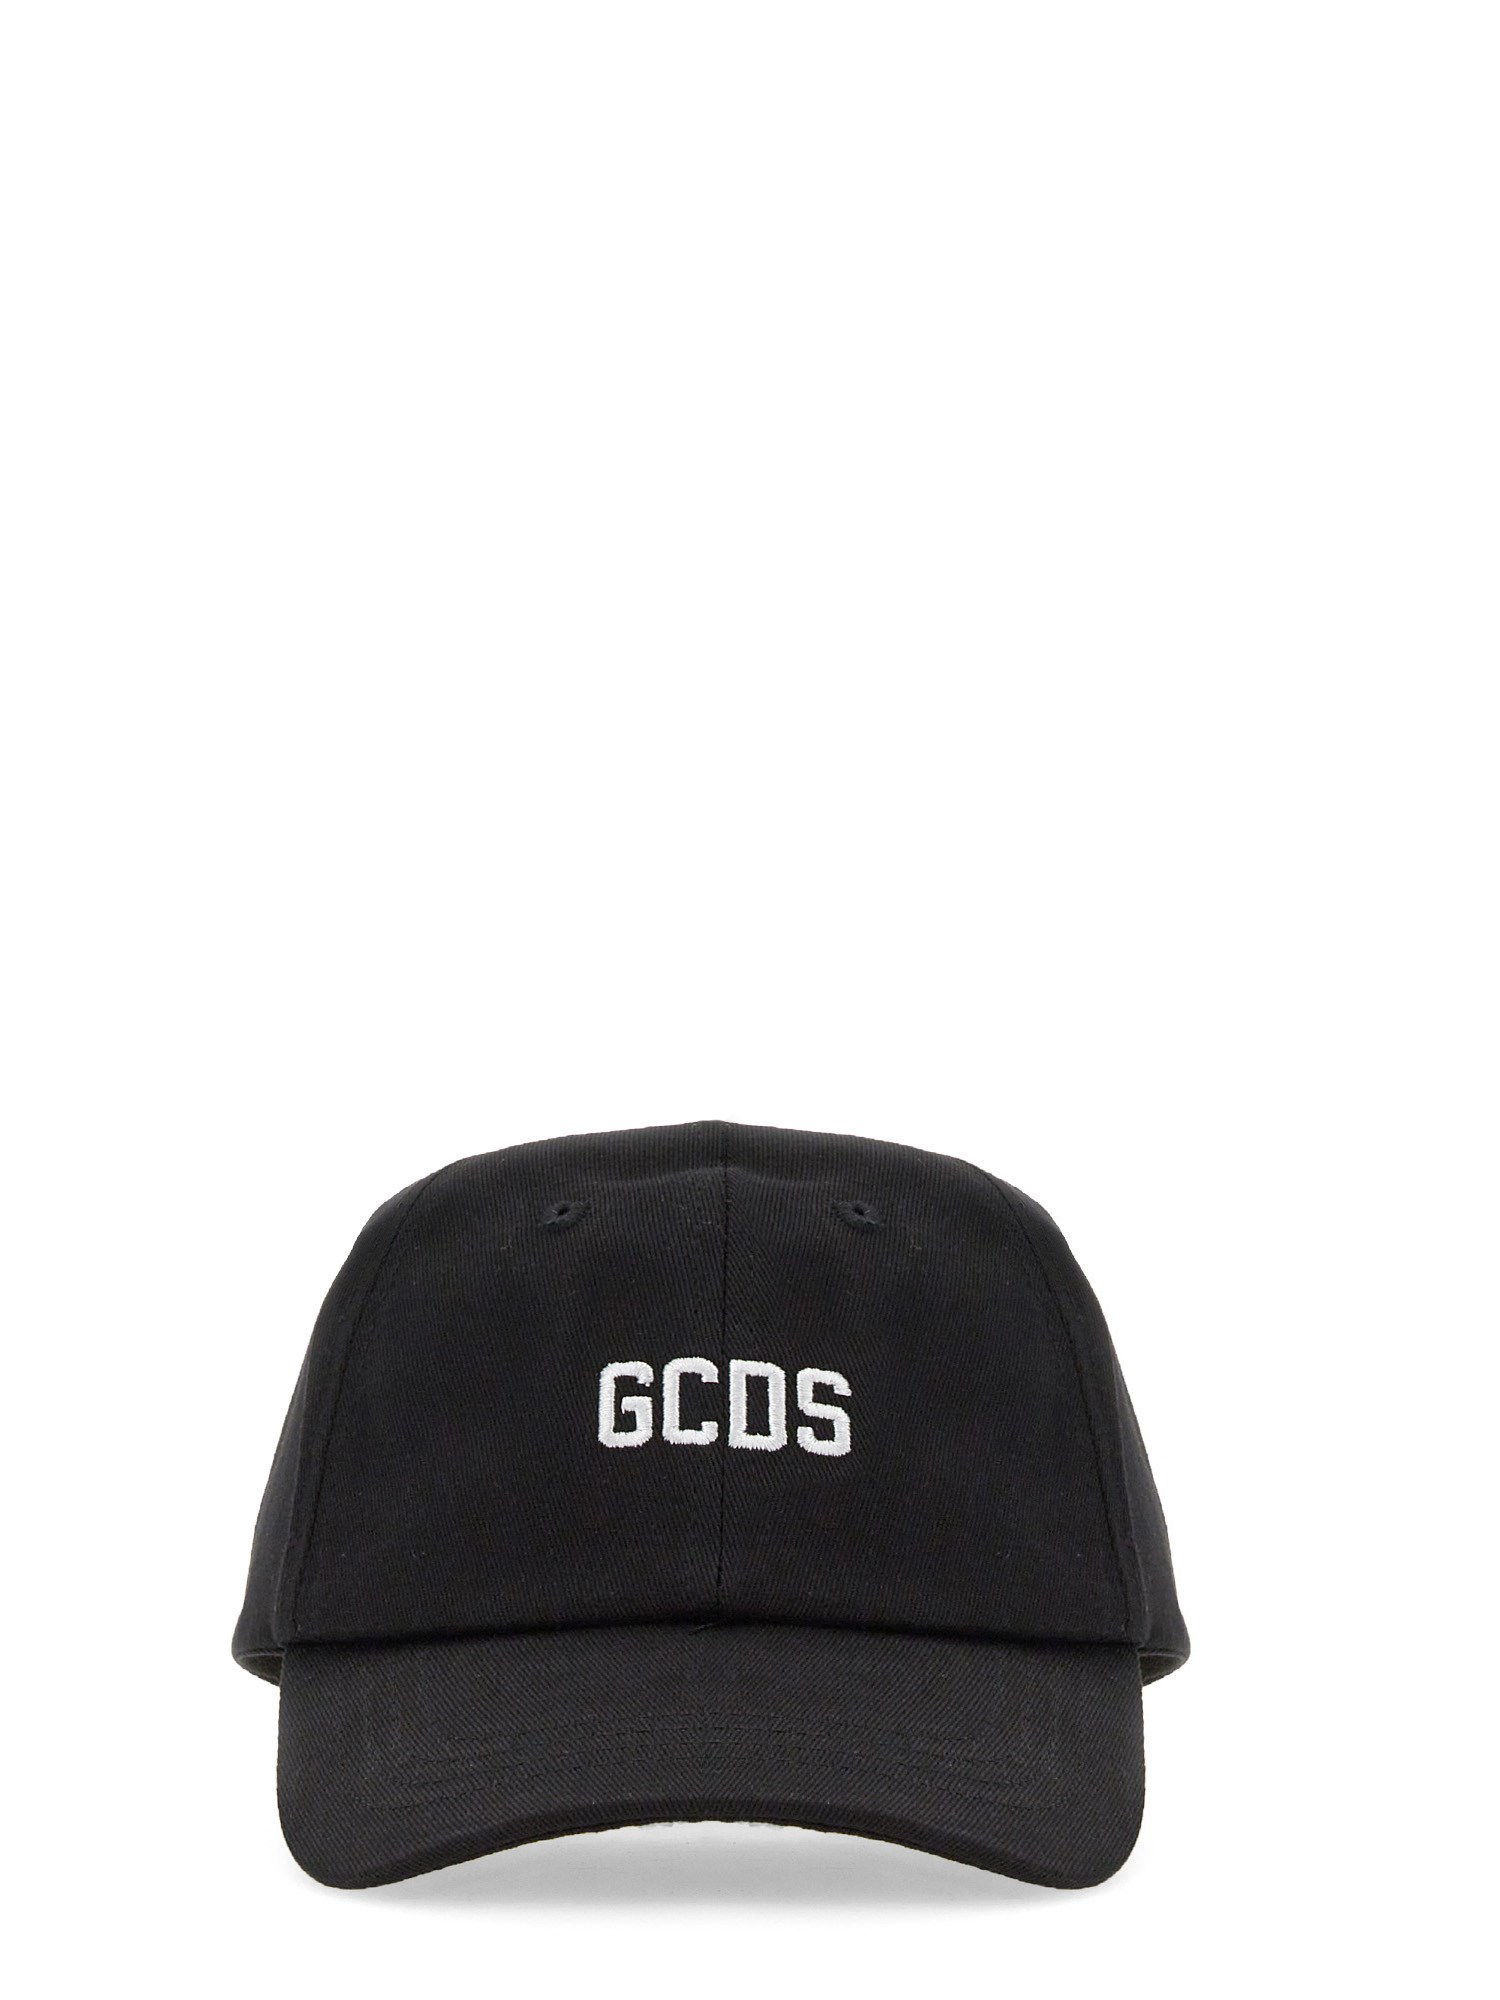 gcds baseball hat essential